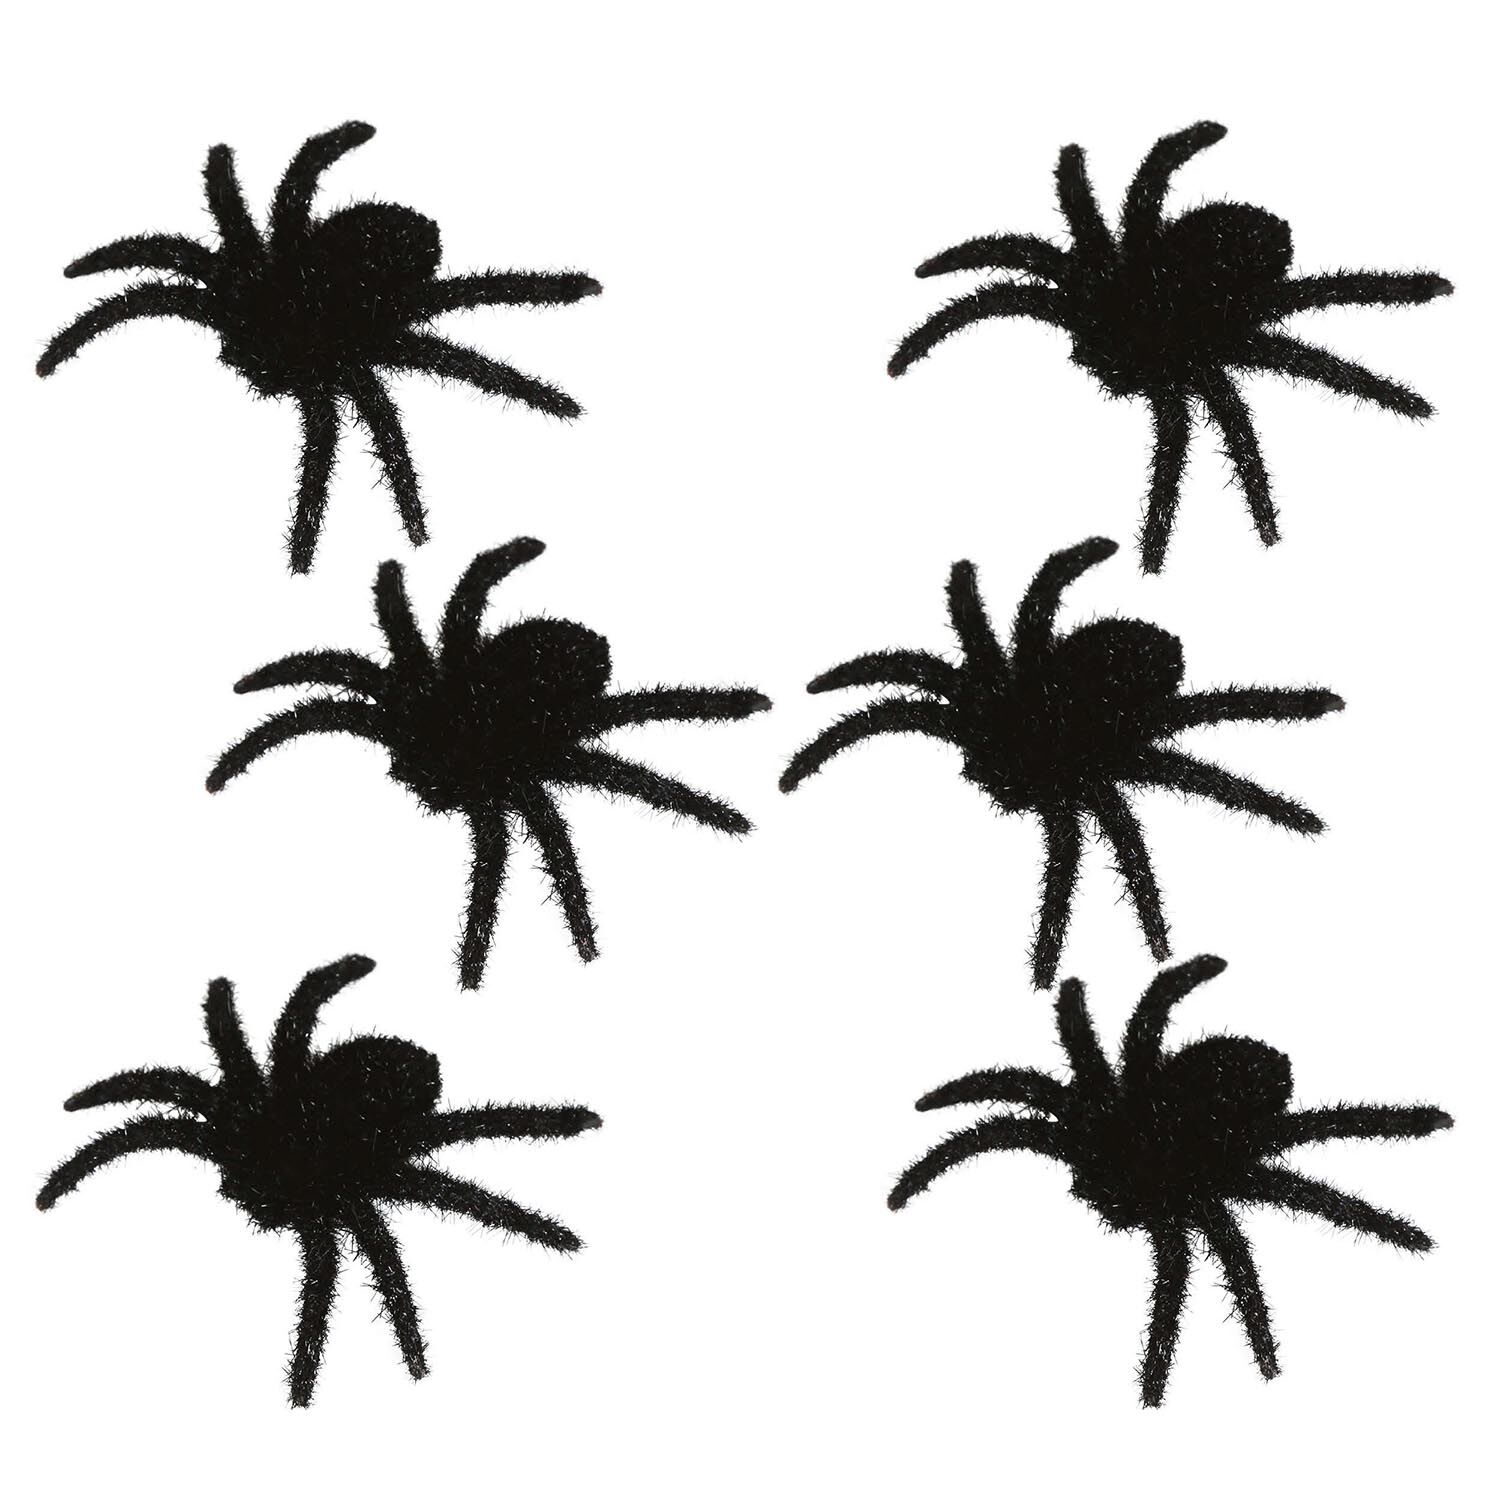 NEU Deko-Spinnen fr Halloween, ca. 6cm, 6 Stck